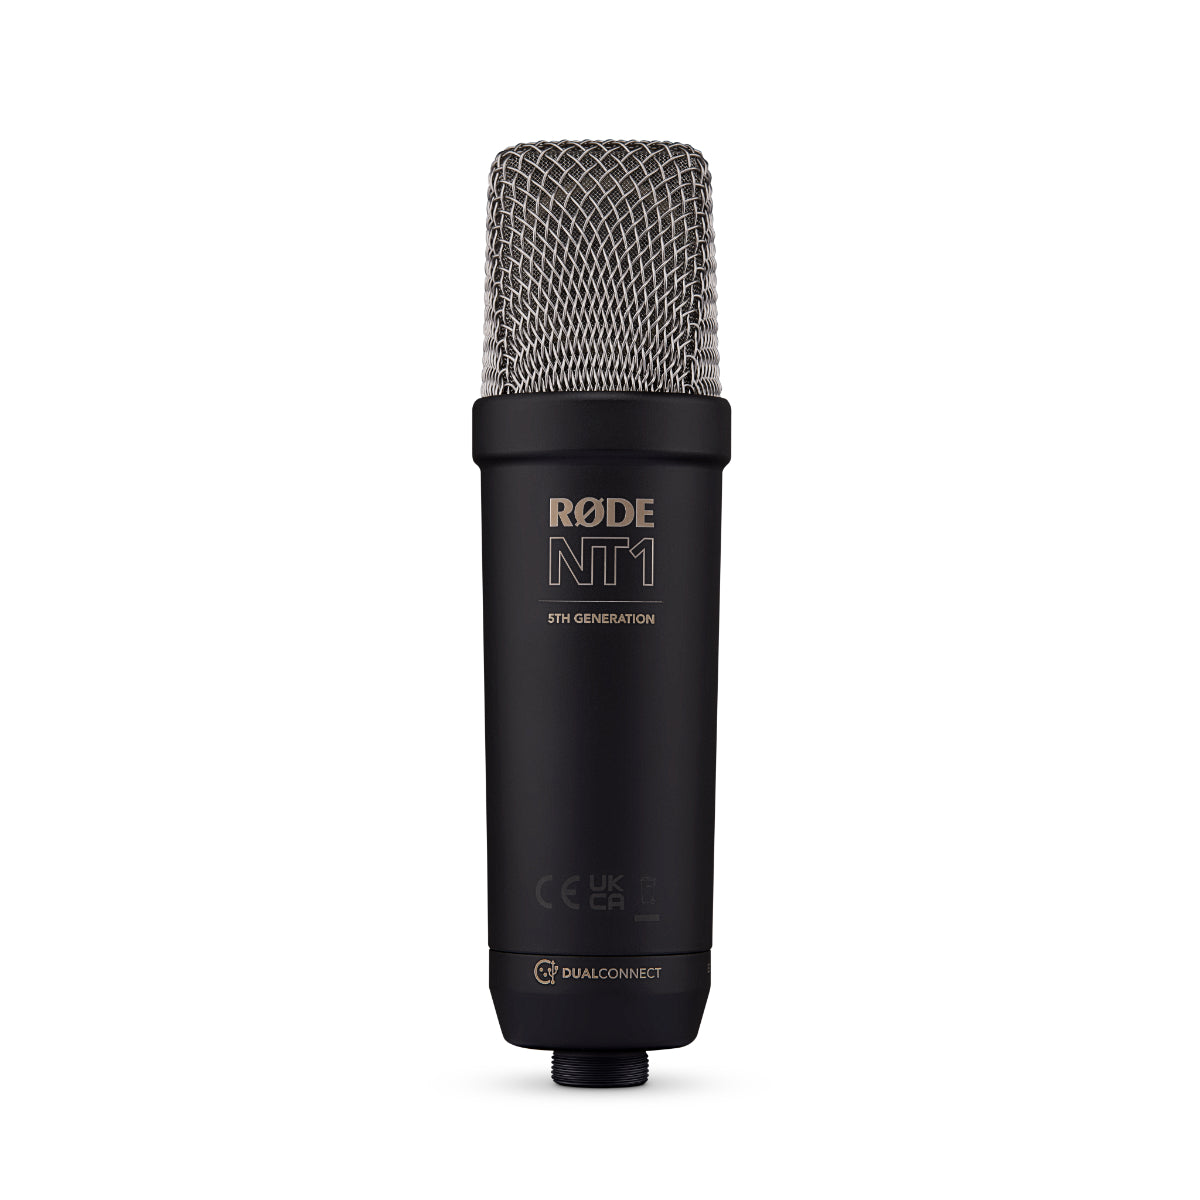 Rode NT1 Gen 5 Studio Cardioid Condenser Microphone Package (Black)